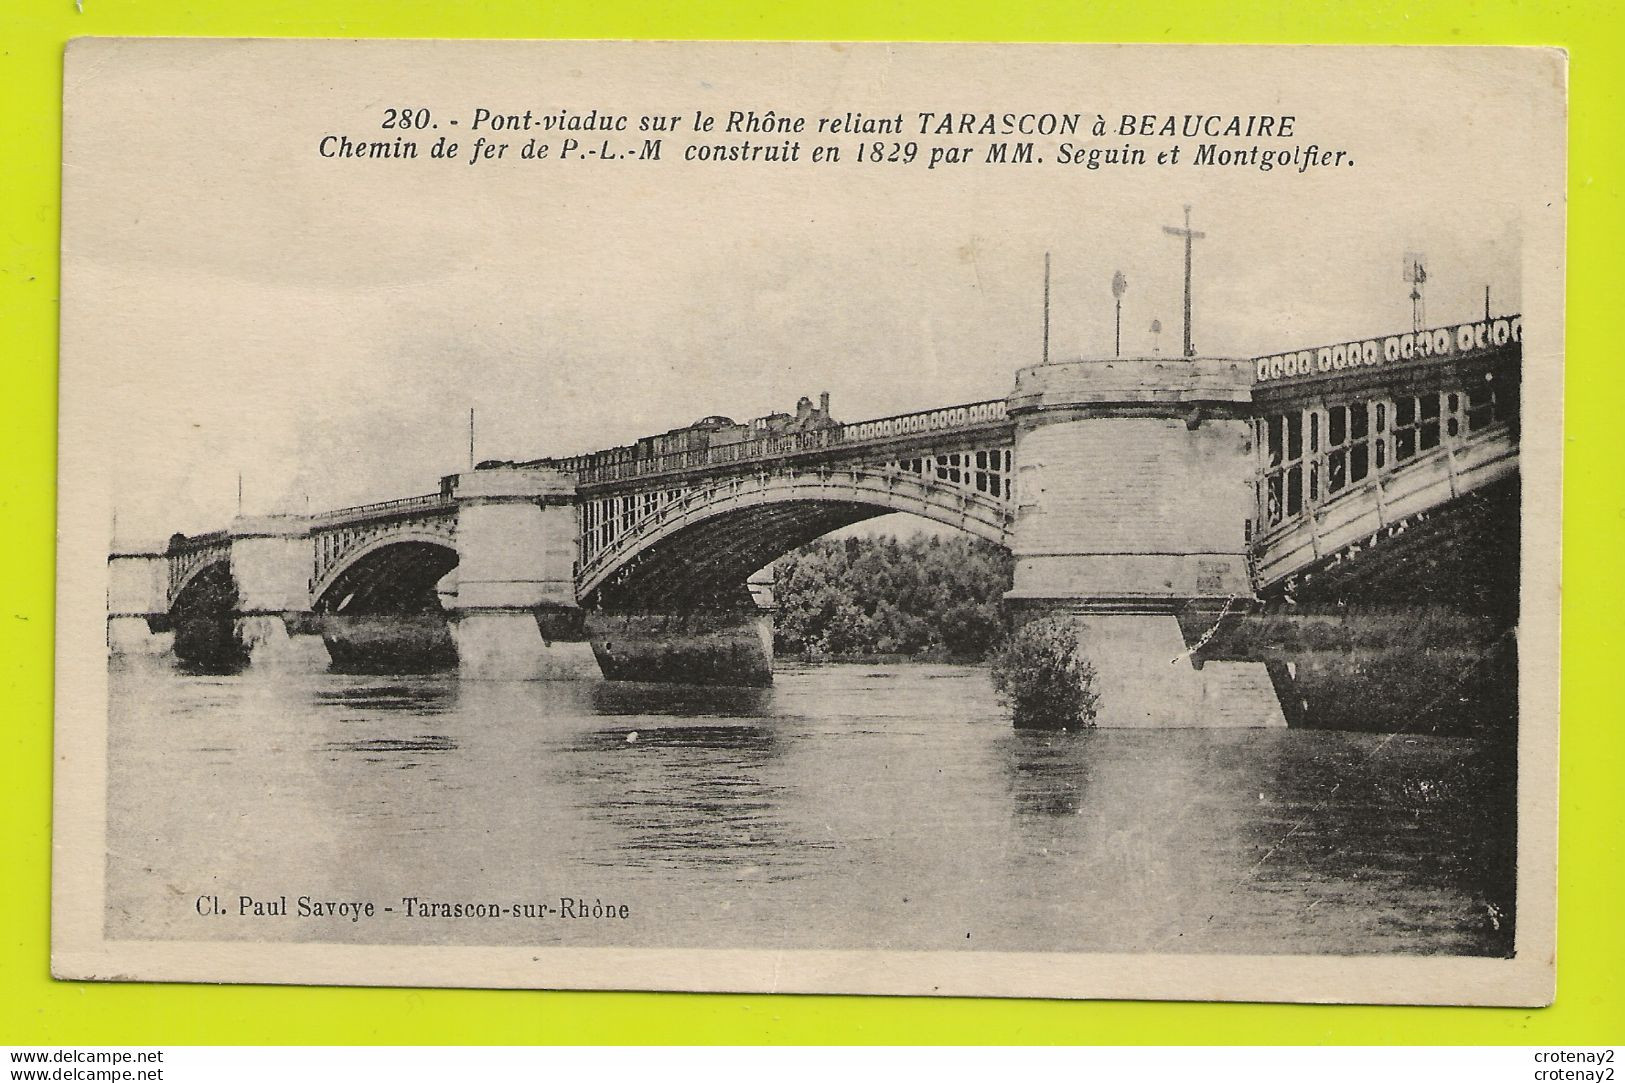 13 Pont Viaduc Sur Rhône Reliant TARASCON à BEAUCAIRE N°280 Chemin De Fer PLM TRAIN Locomotive à VAPEUR Col Paul Savoye - Tarascon